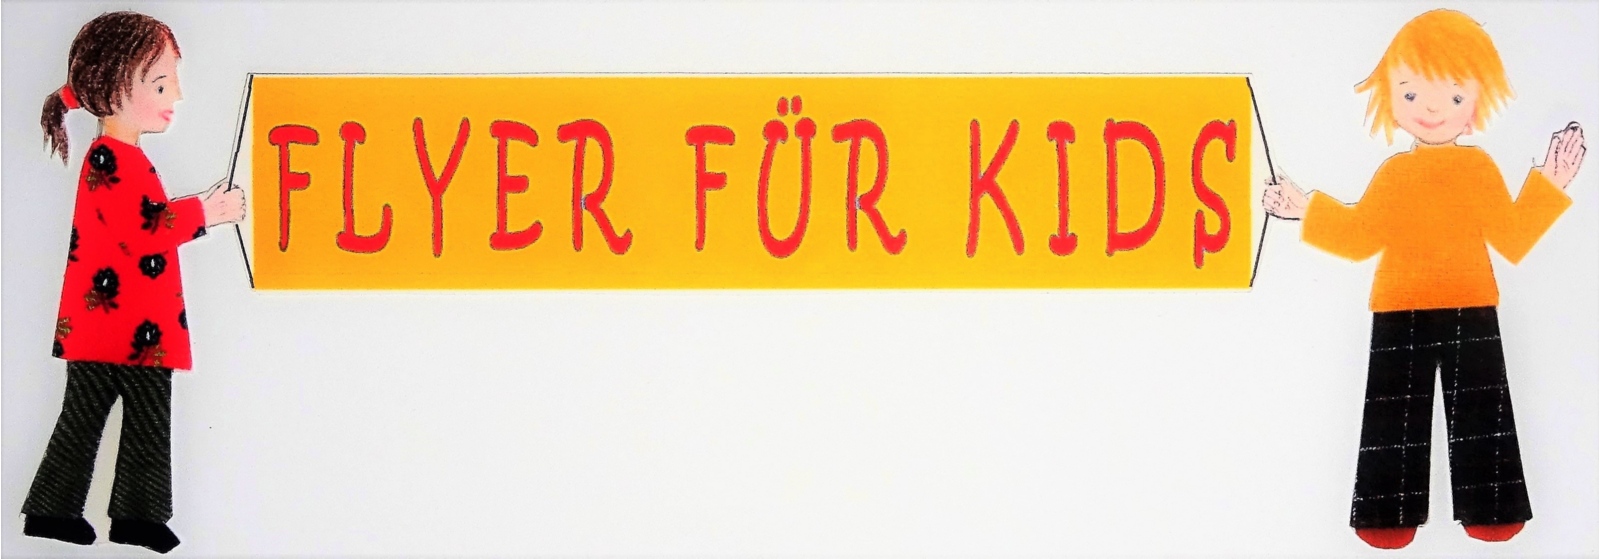 Flyer for kids (c) Sr. M. Helga Königs